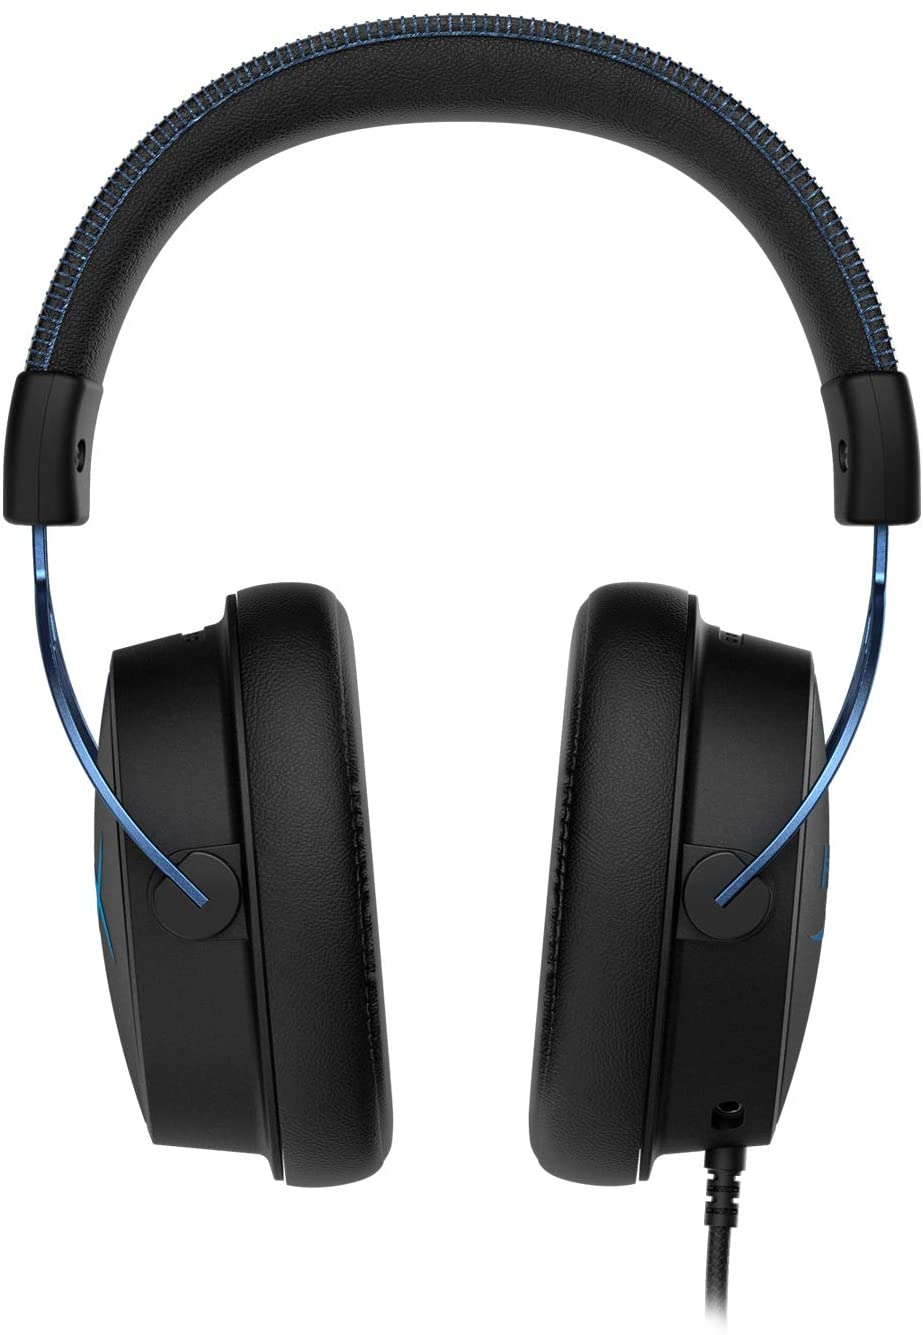 HyperX Cloud Alpha S 7.1 - Blue 電競遊戲耳機